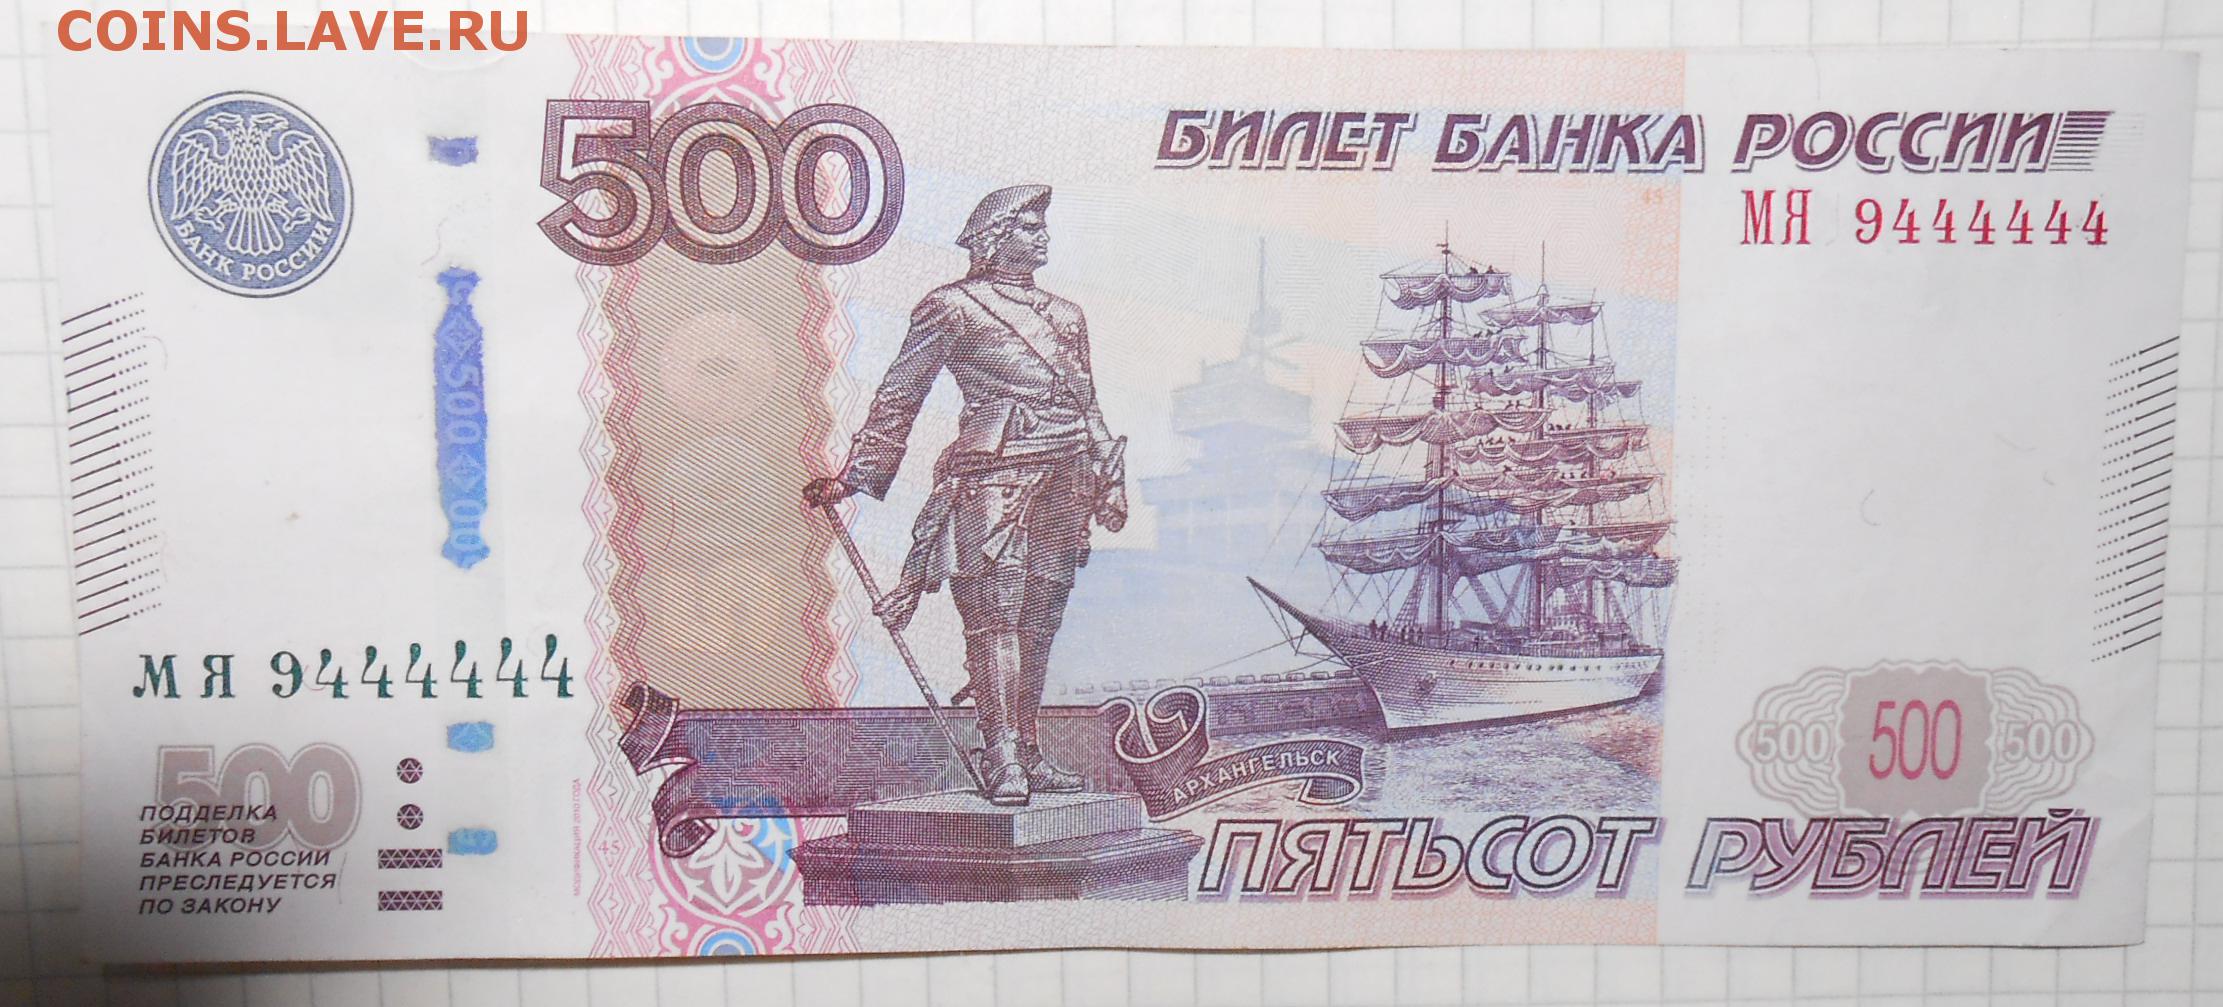 Билеты 500 рублей. 500 Рублей банка приколов. 500 Рублей распечатать. Билет банка приколов. Билет банка России 500 рублей.